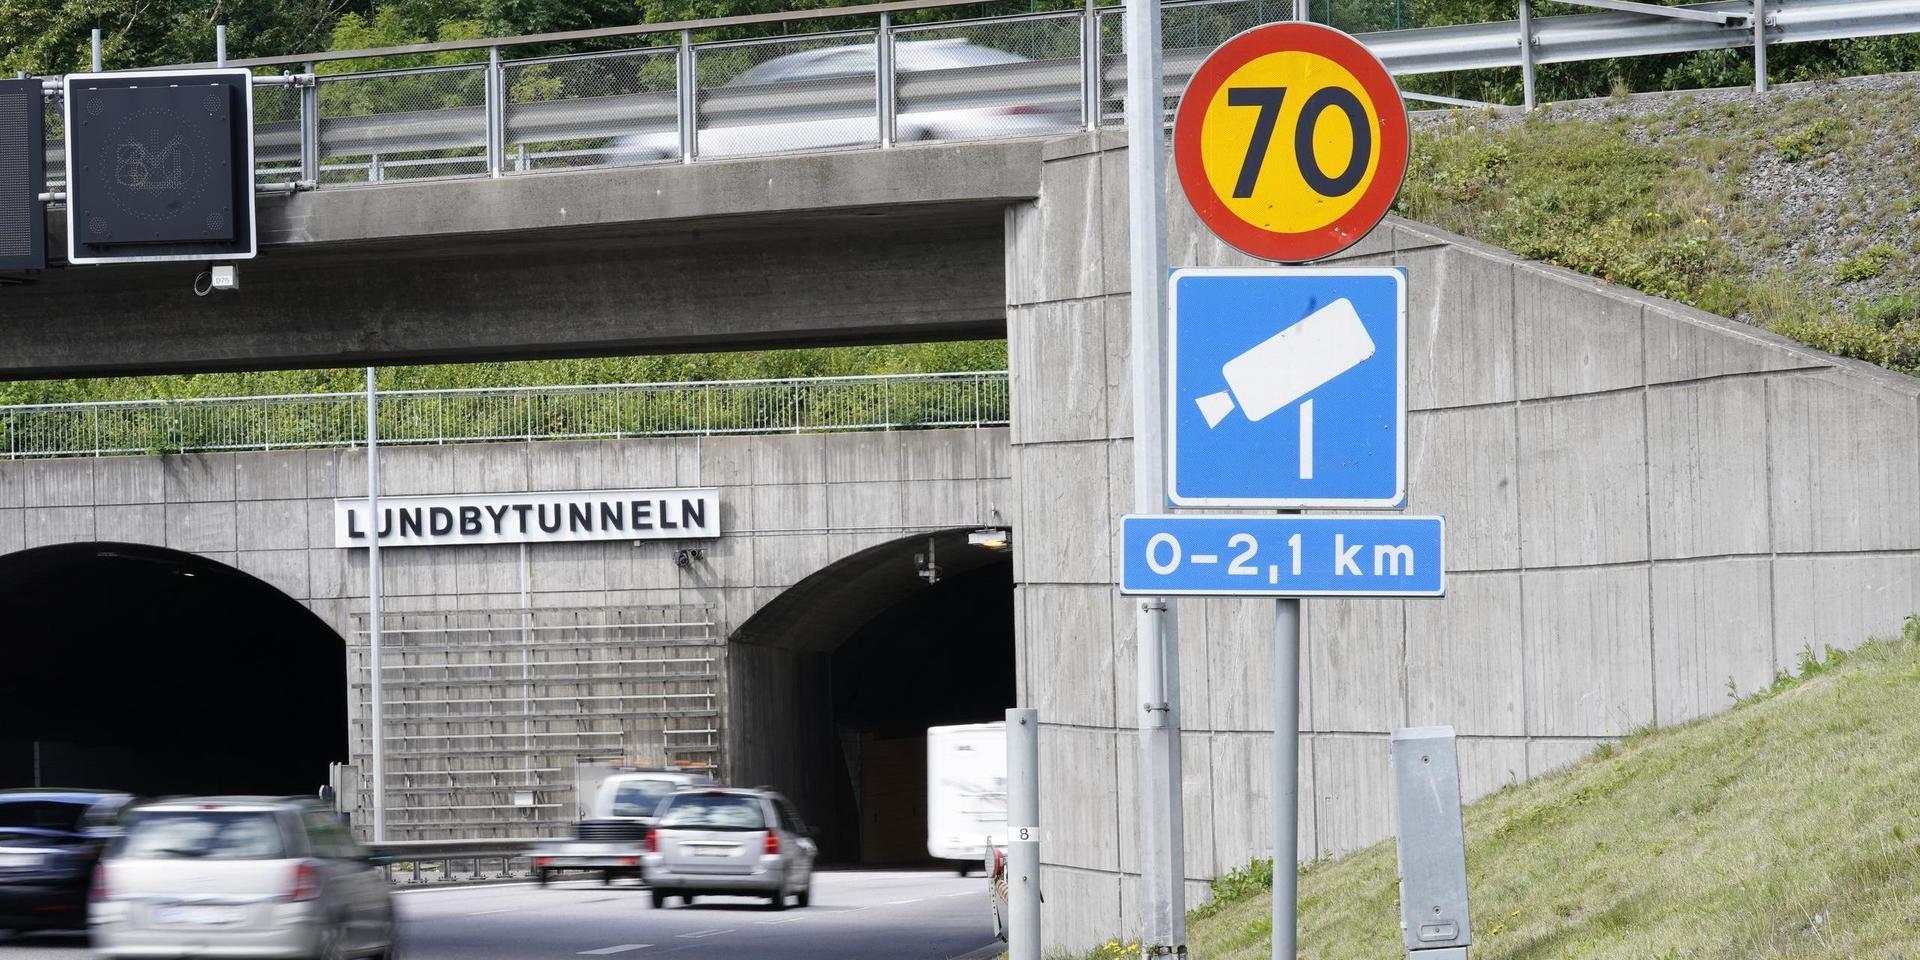 Lundbytunneln med fartkamera, Eriksbergsmotet. 4 239 fortkörare har fastnat på bild mellan Eriksbergs- och Bräckemotet på vägsträckan i Göteborg, flest i Sverige. Arkivbild